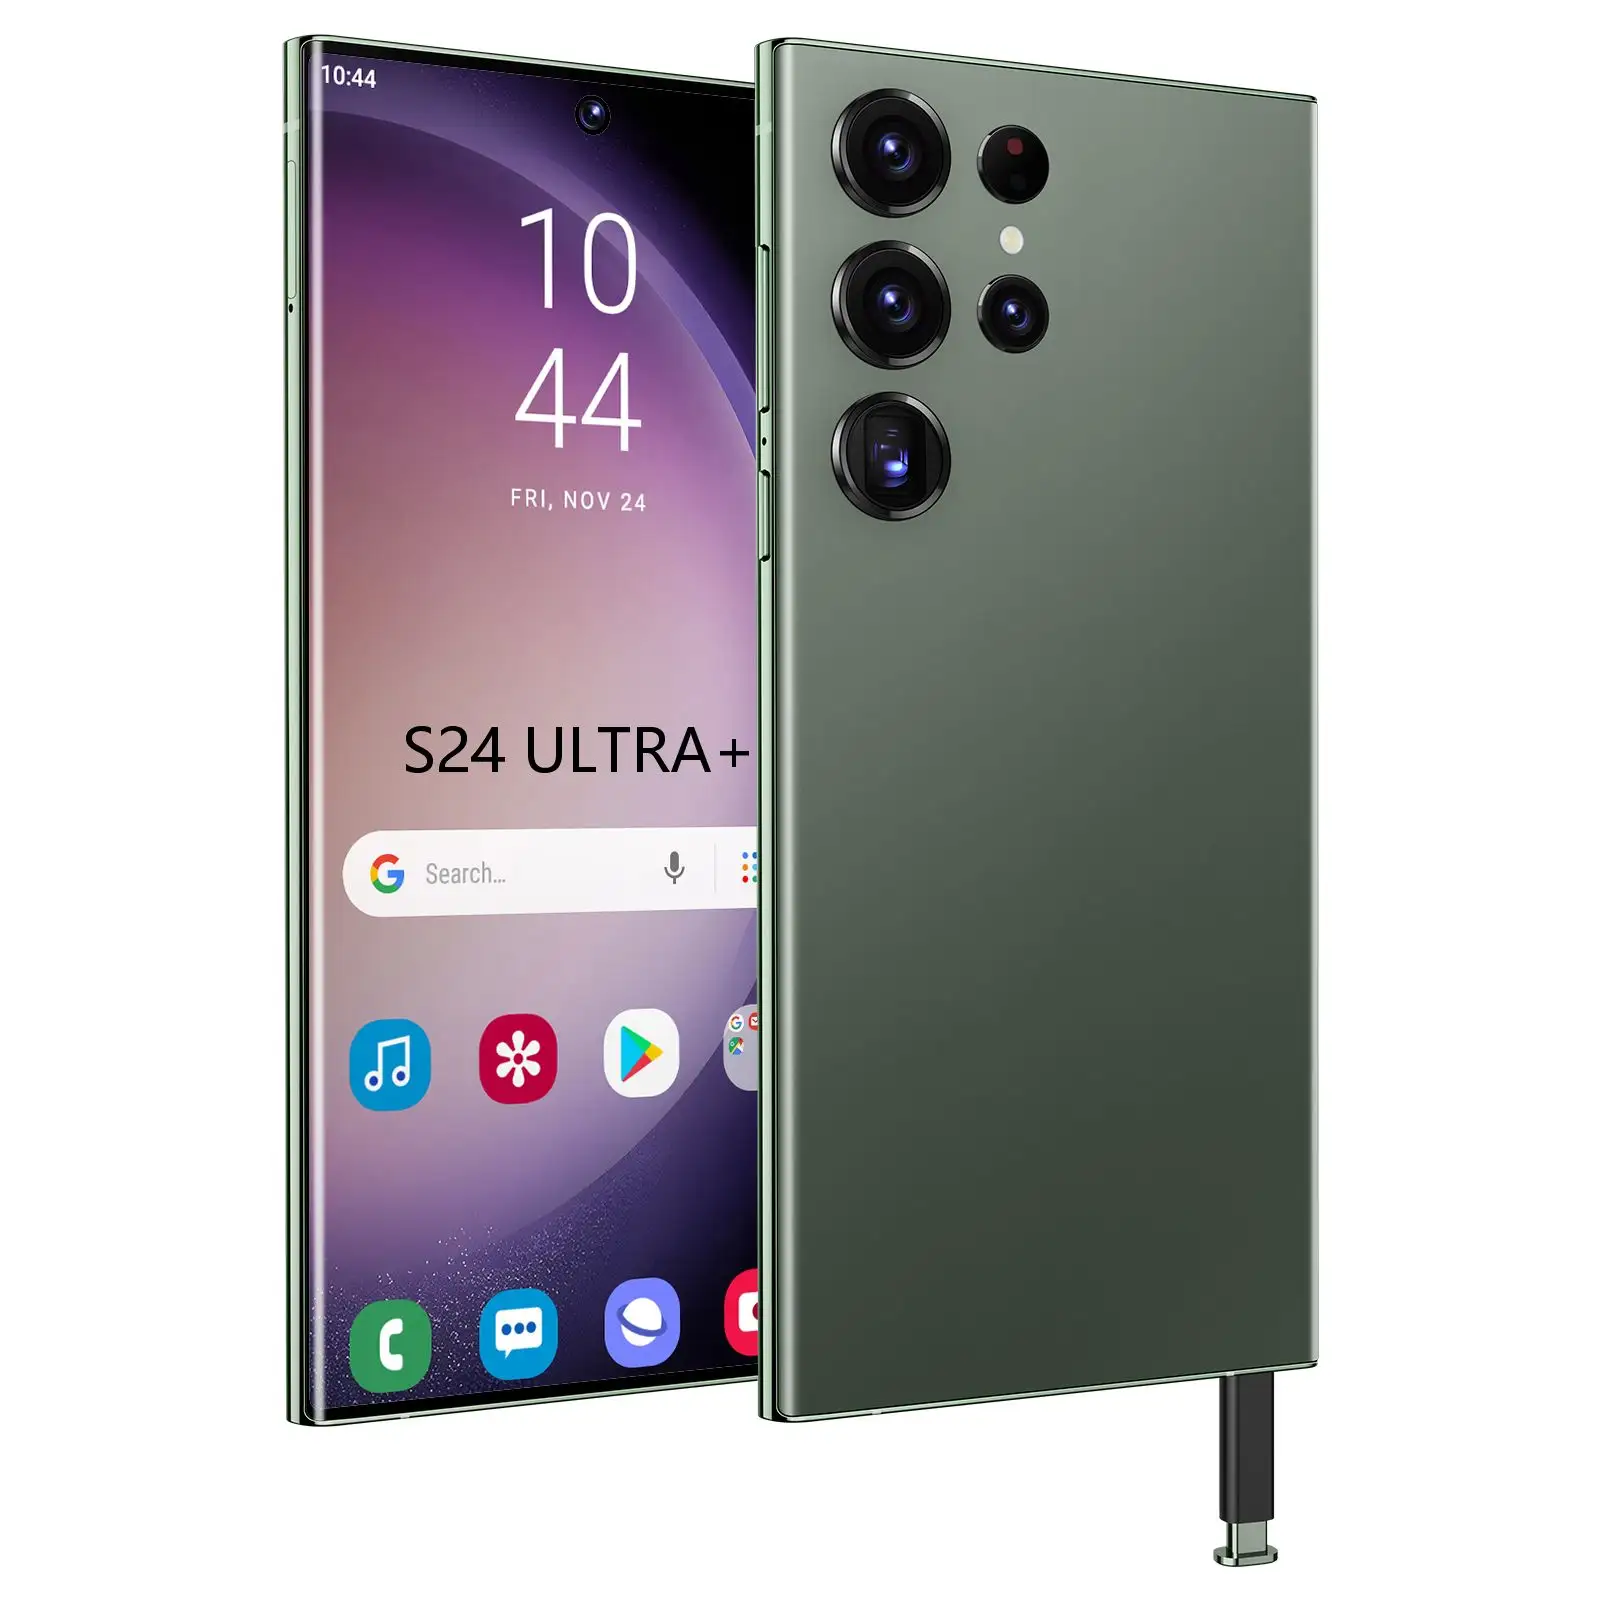 Sonderverkauf 7 Slim And Version Smartphone jetzt verfügbar auf der globalen Digitalen Exportplattform S24 Ultra